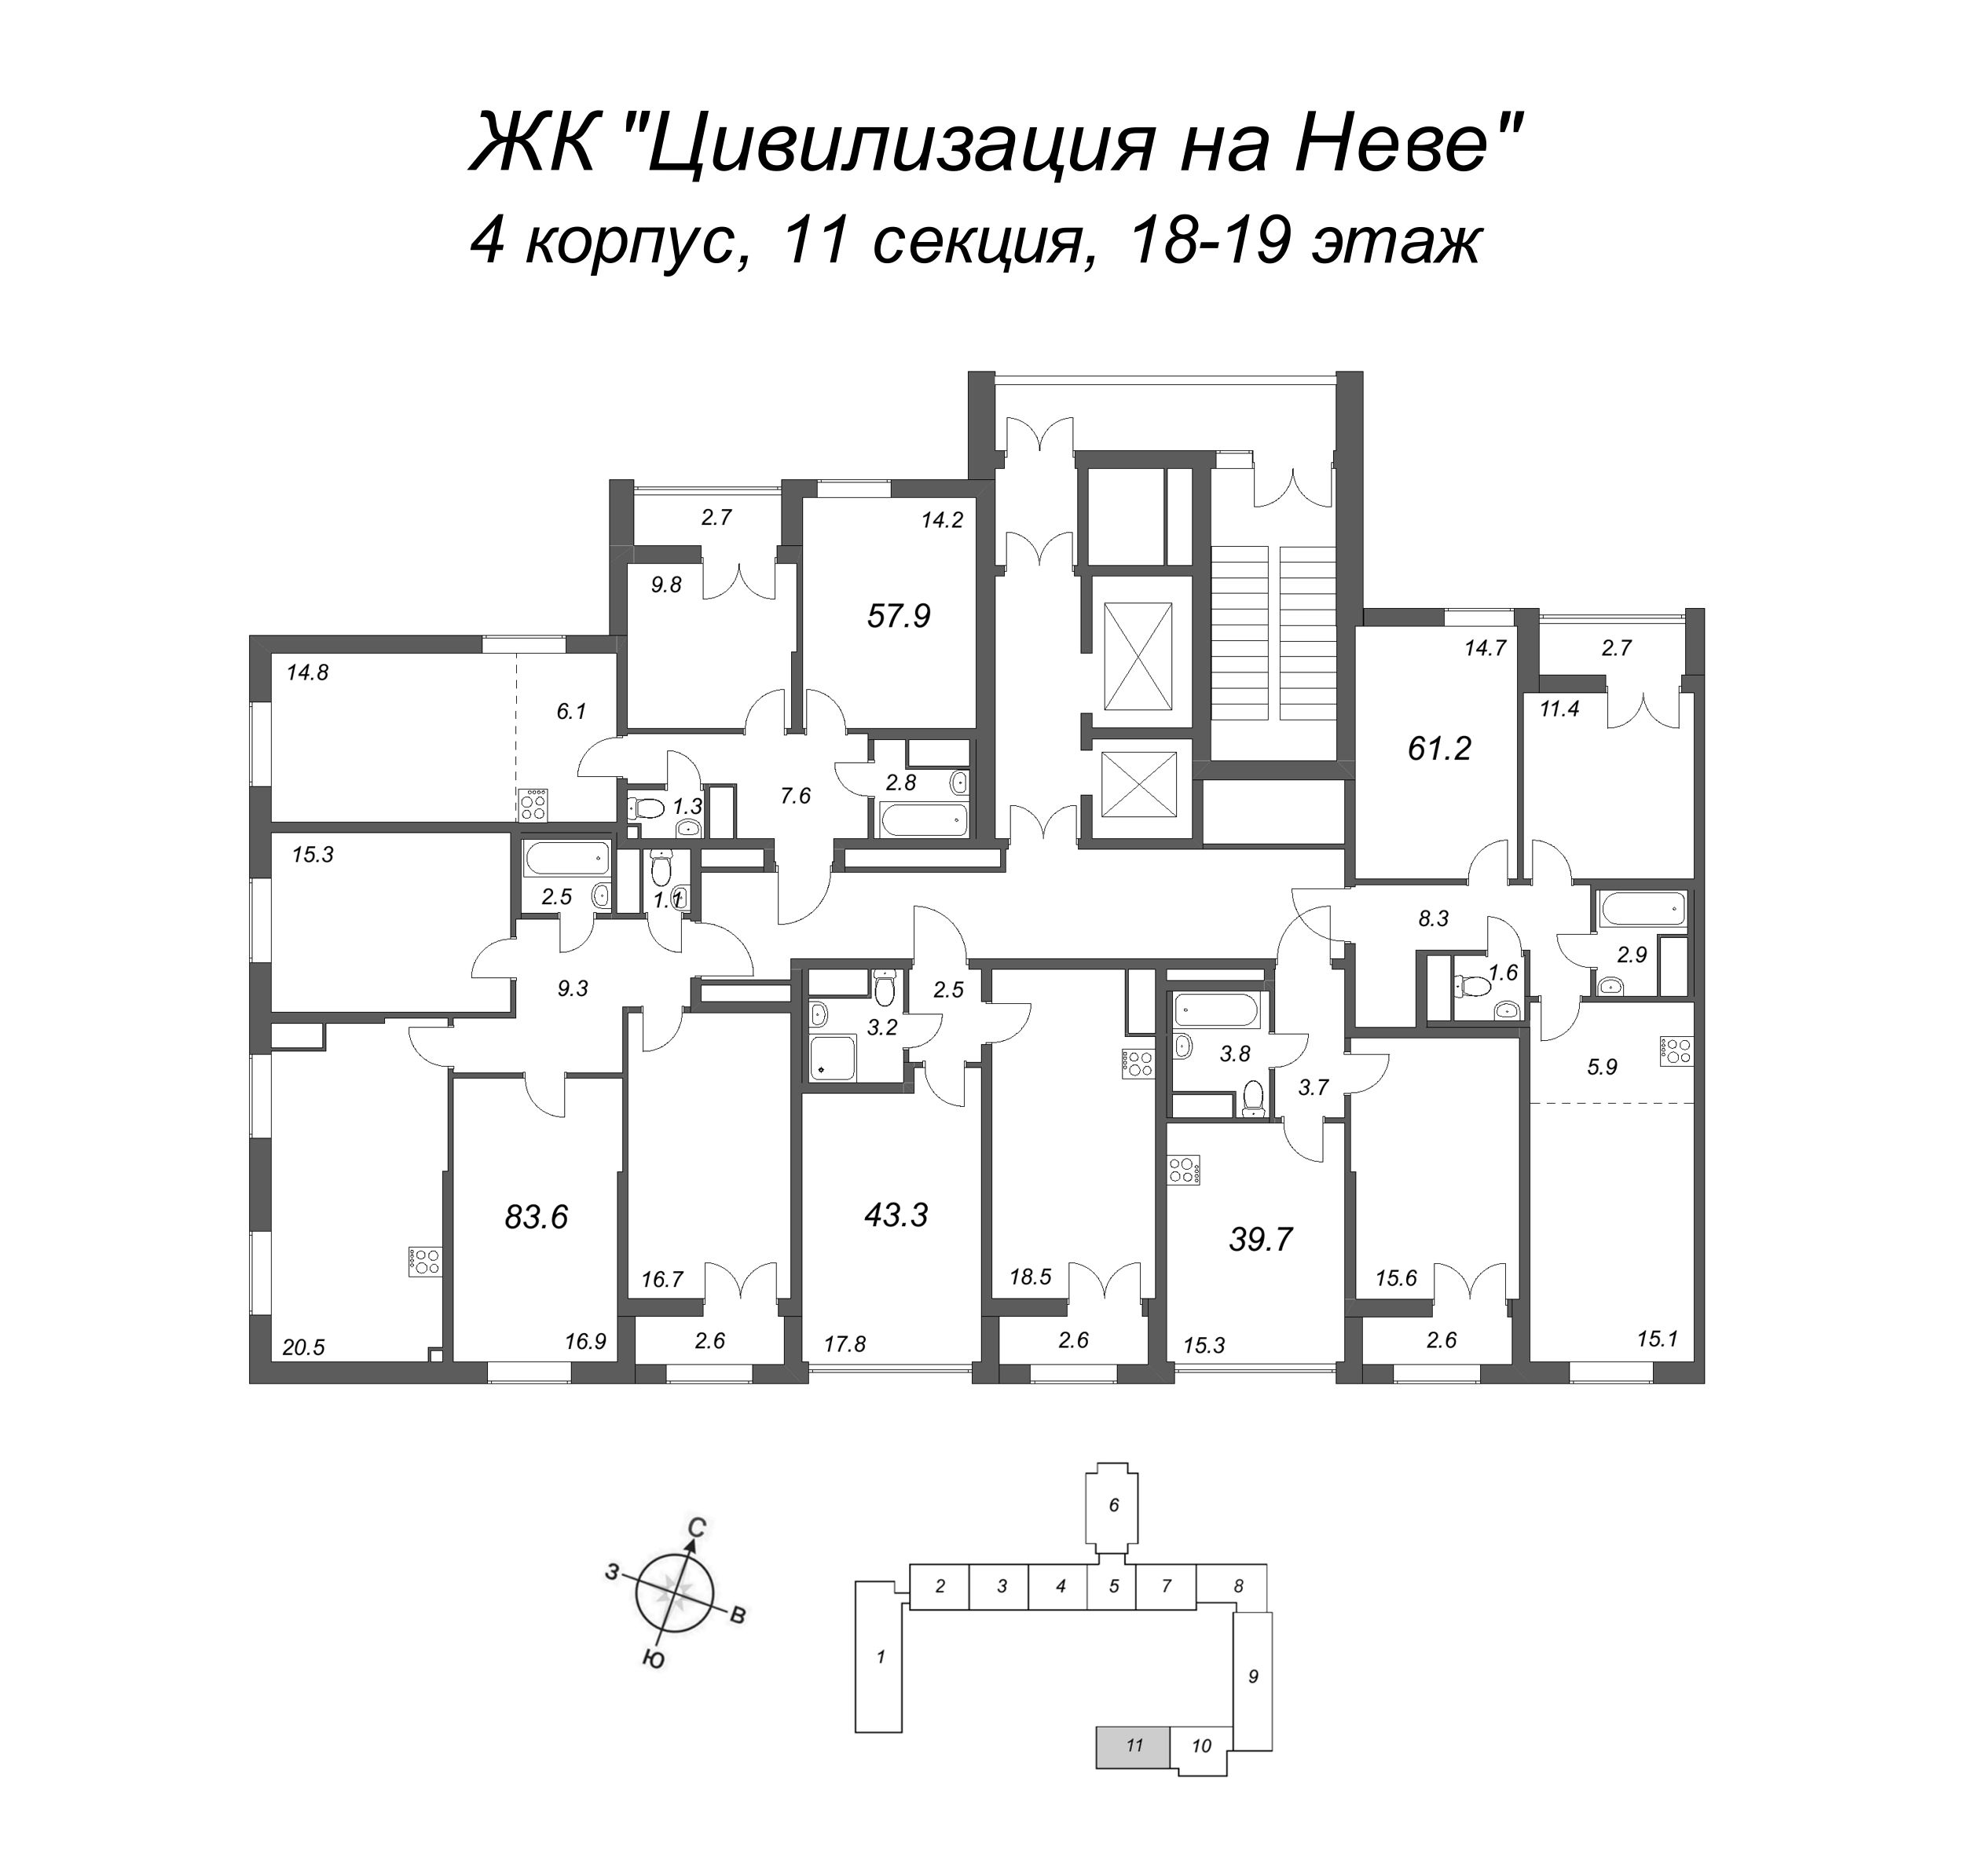 3-комнатная (Евро) квартира, 61.2 м² в ЖК "Цивилизация на Неве" - планировка этажа